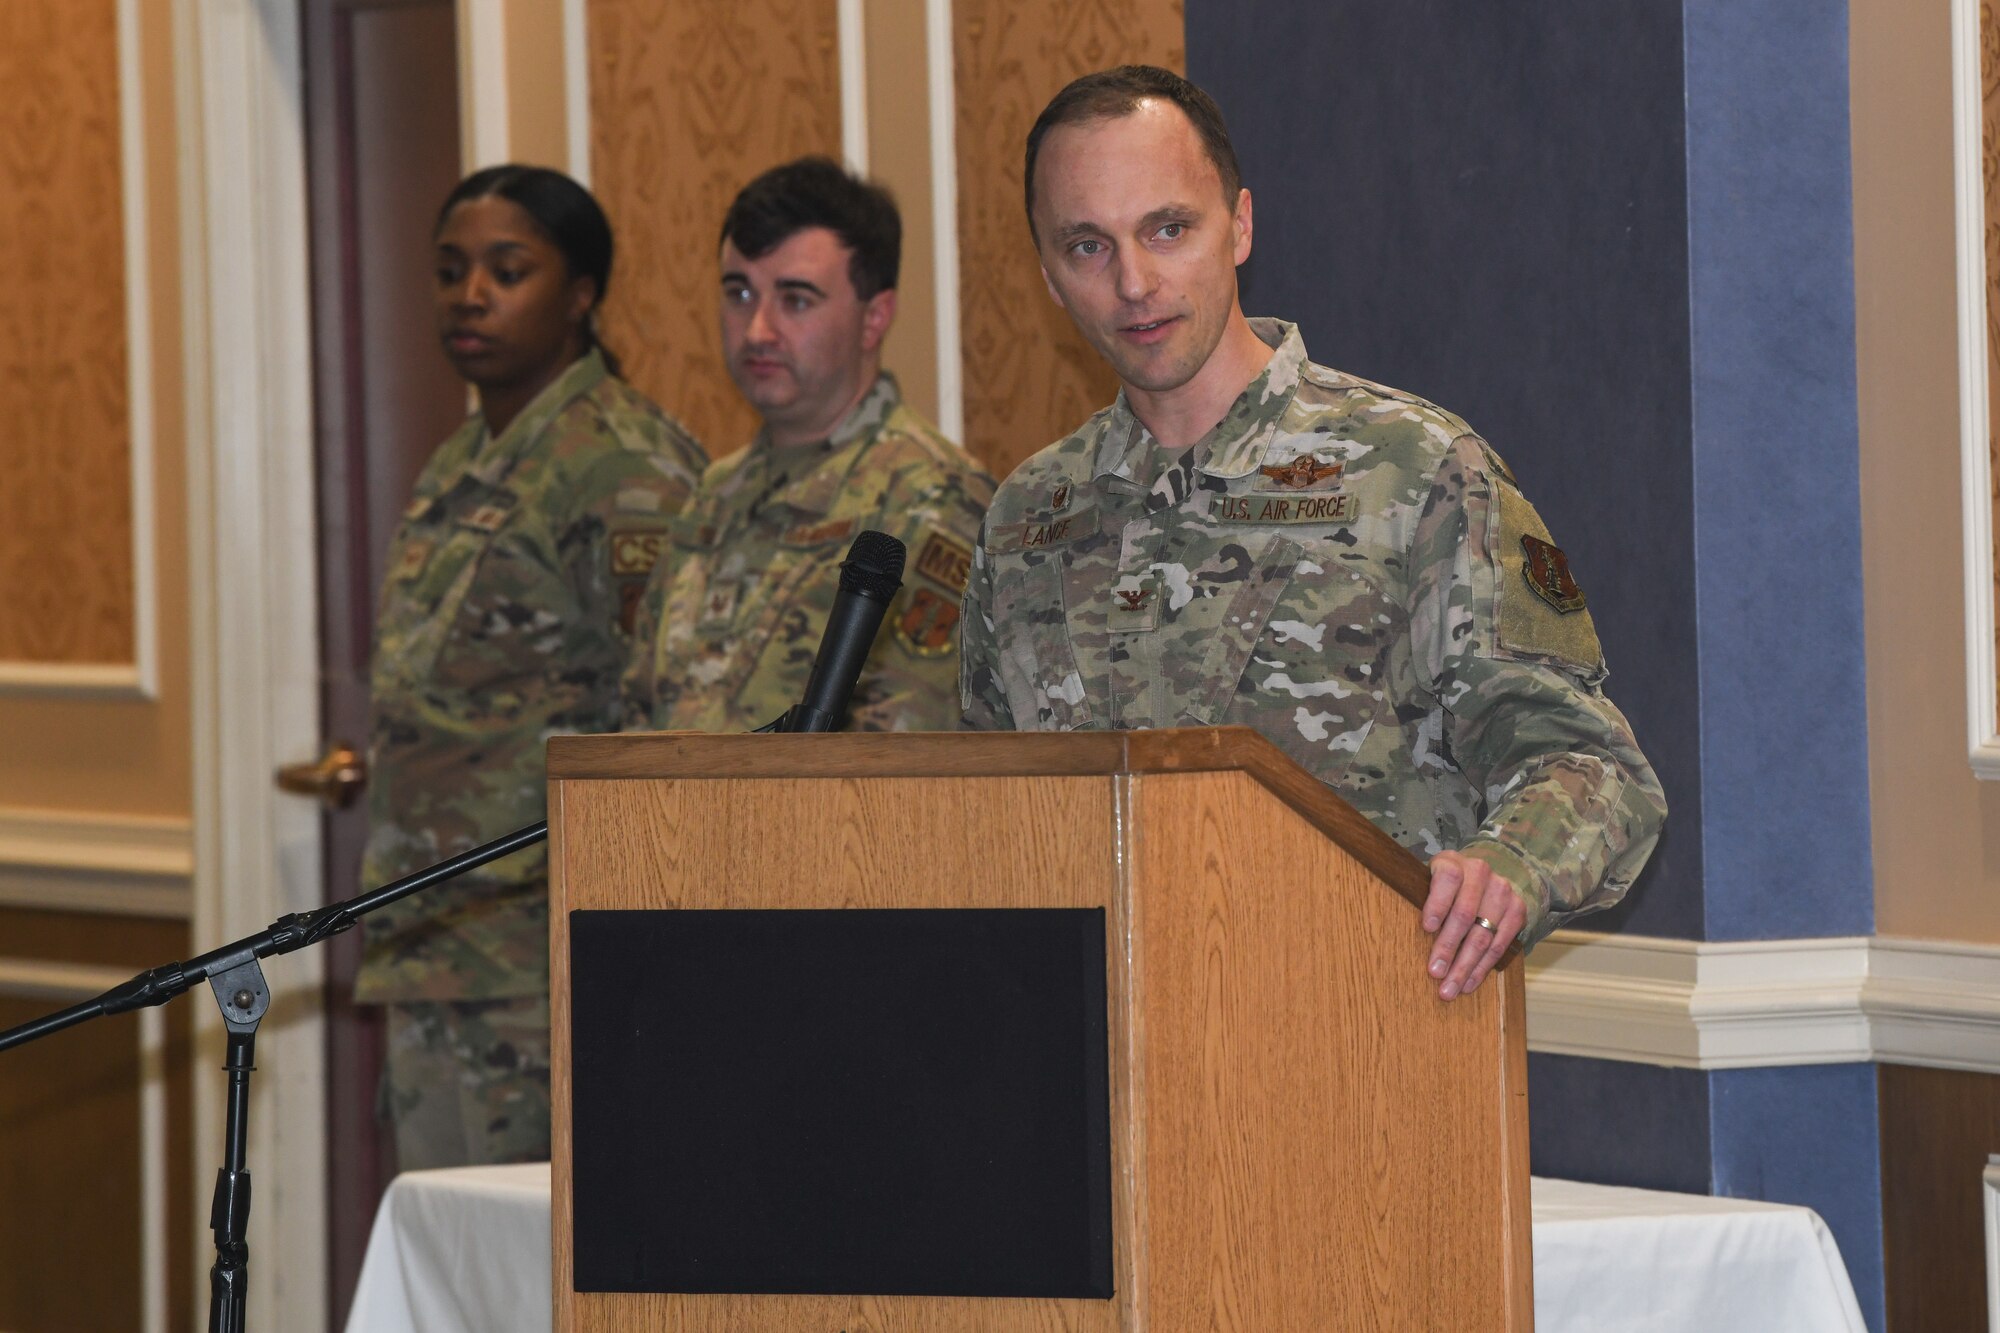 Military member at podium.